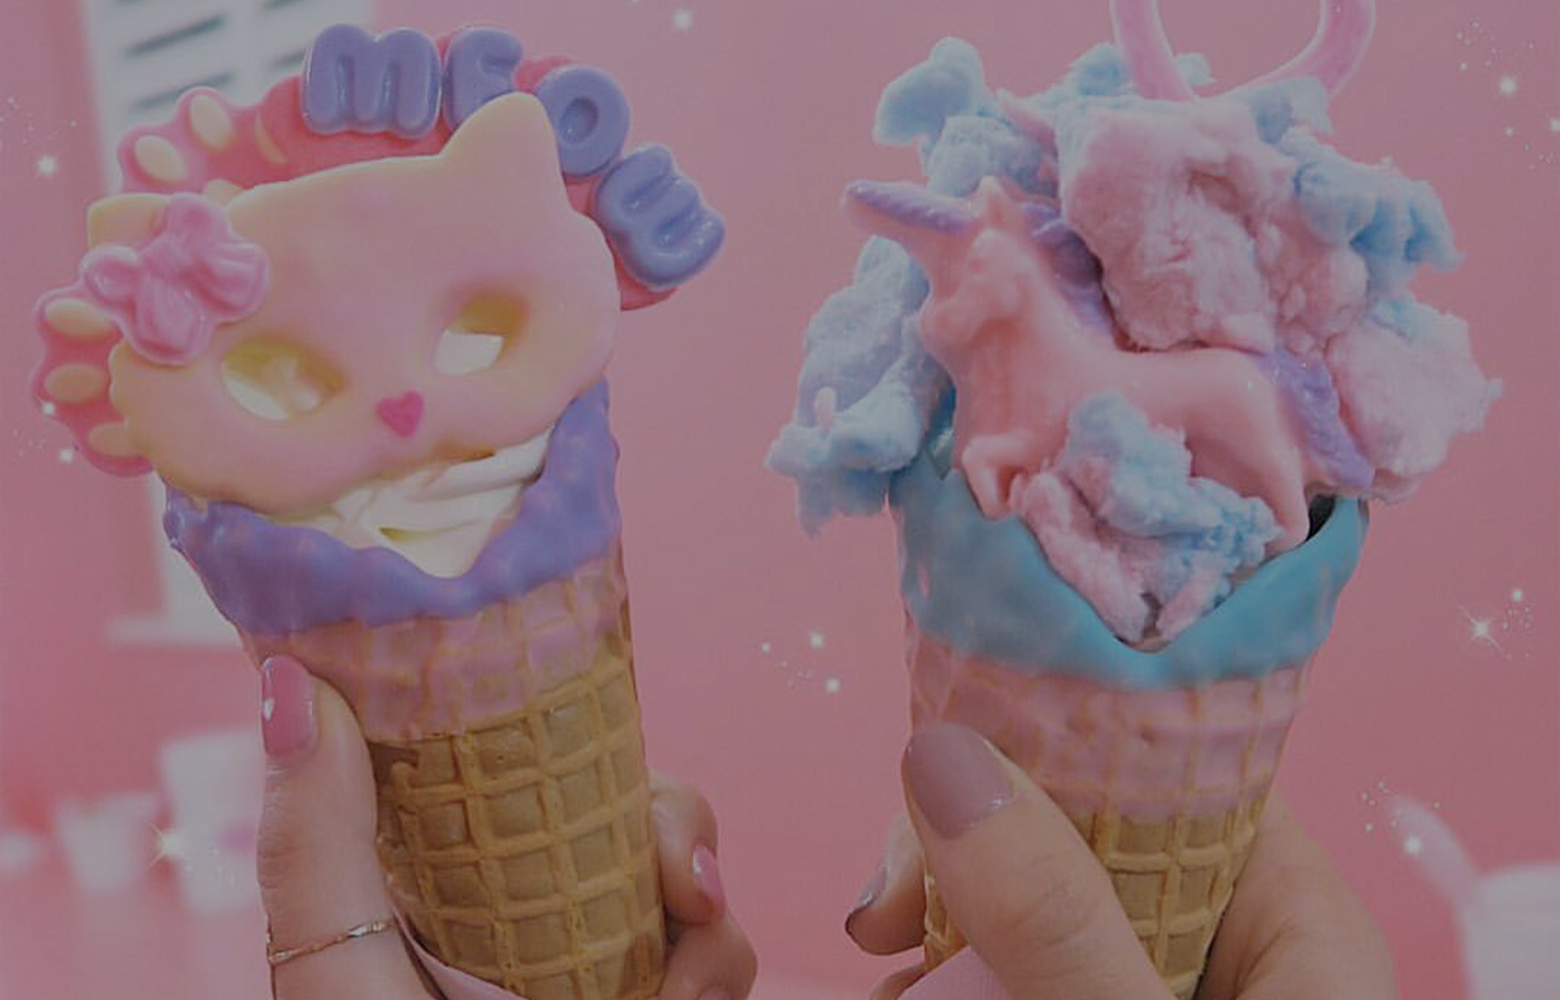 タグピク社 Eddy S Ice Creamとの提携により 無料でお洒落なアイスクリームが食べられるサービスを開始 Press Release News pic Inc Style The World